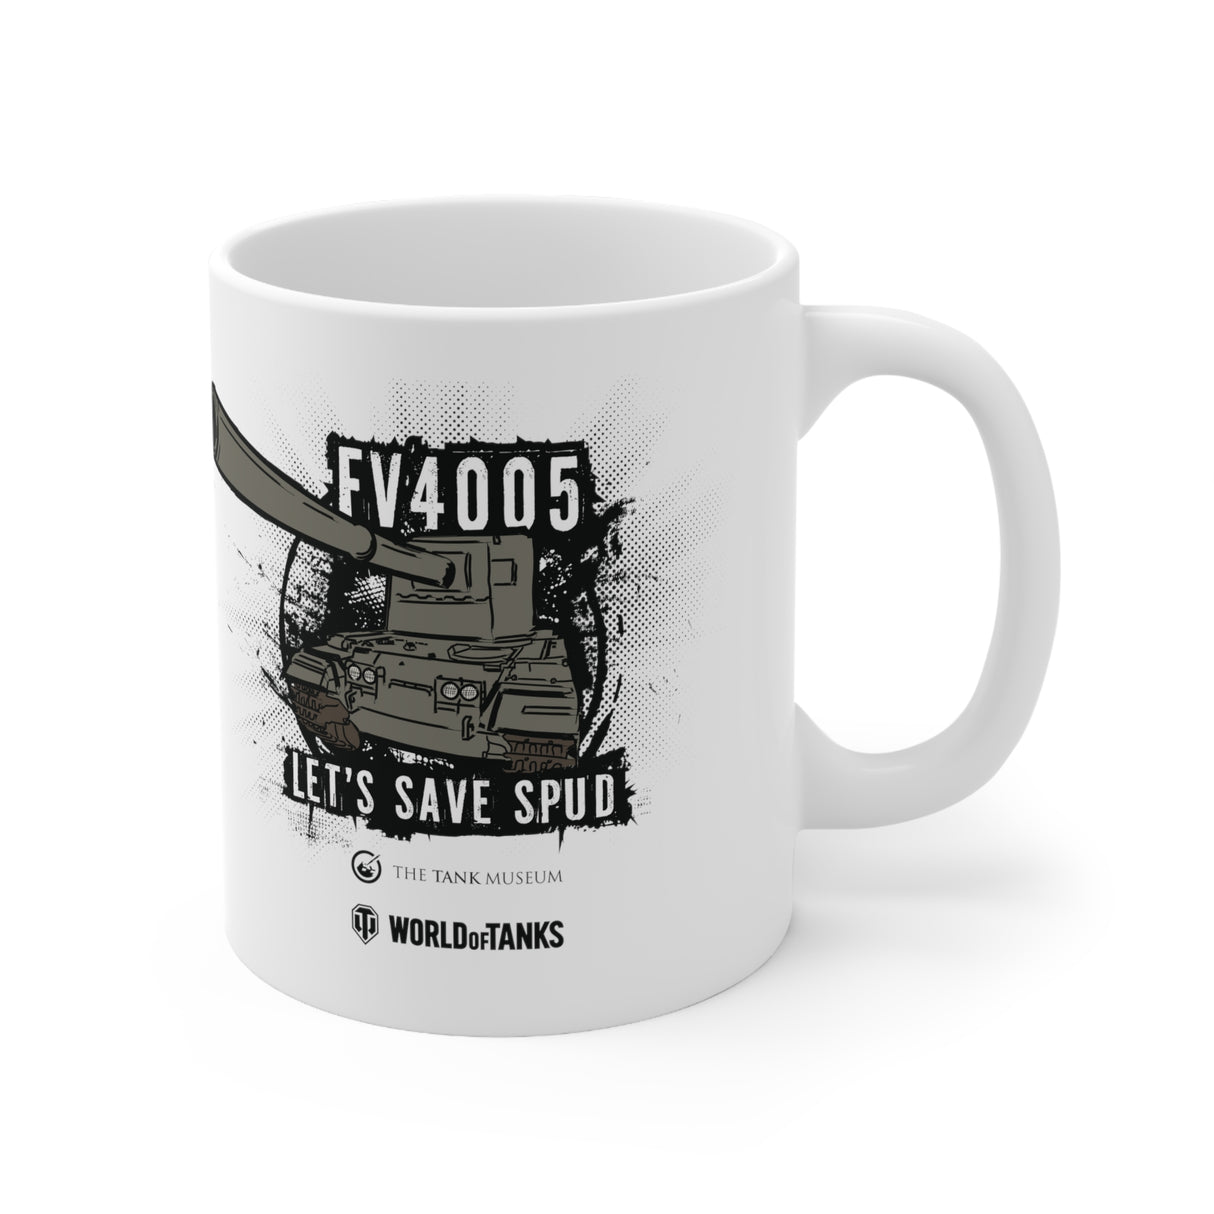 FV4005 Mug - Let's Save Spud